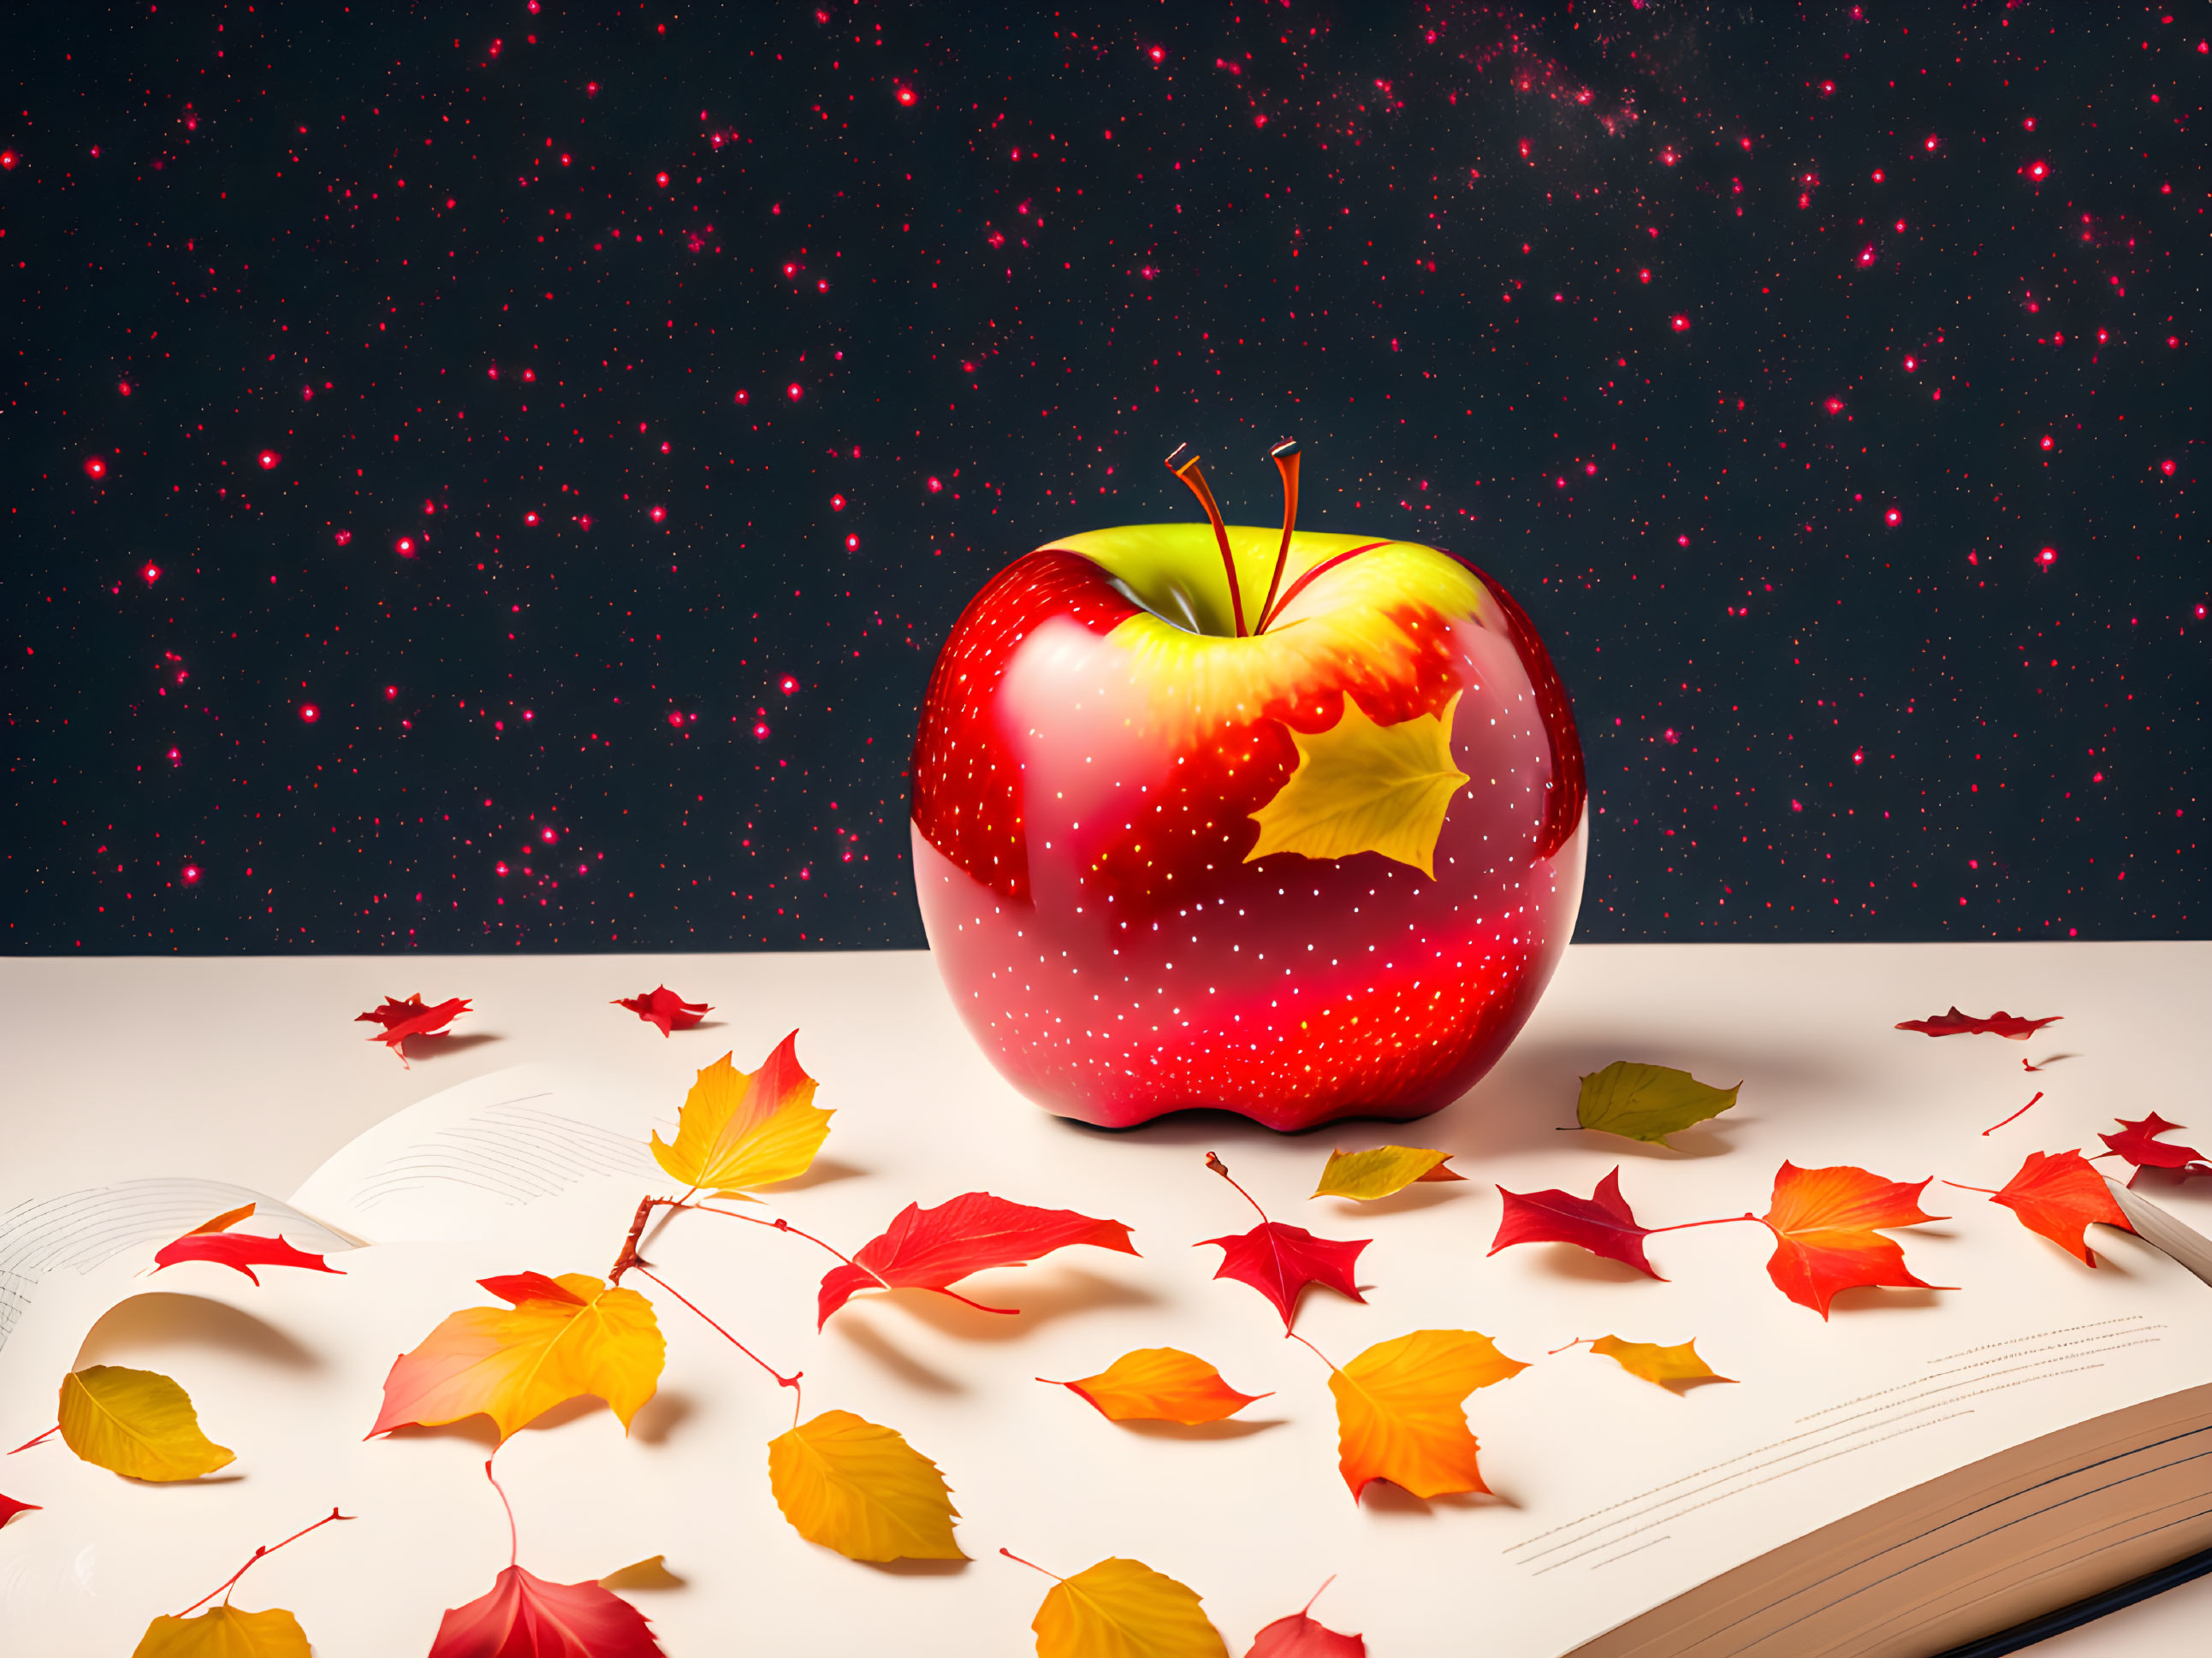 Autumn's Literary Apple Art